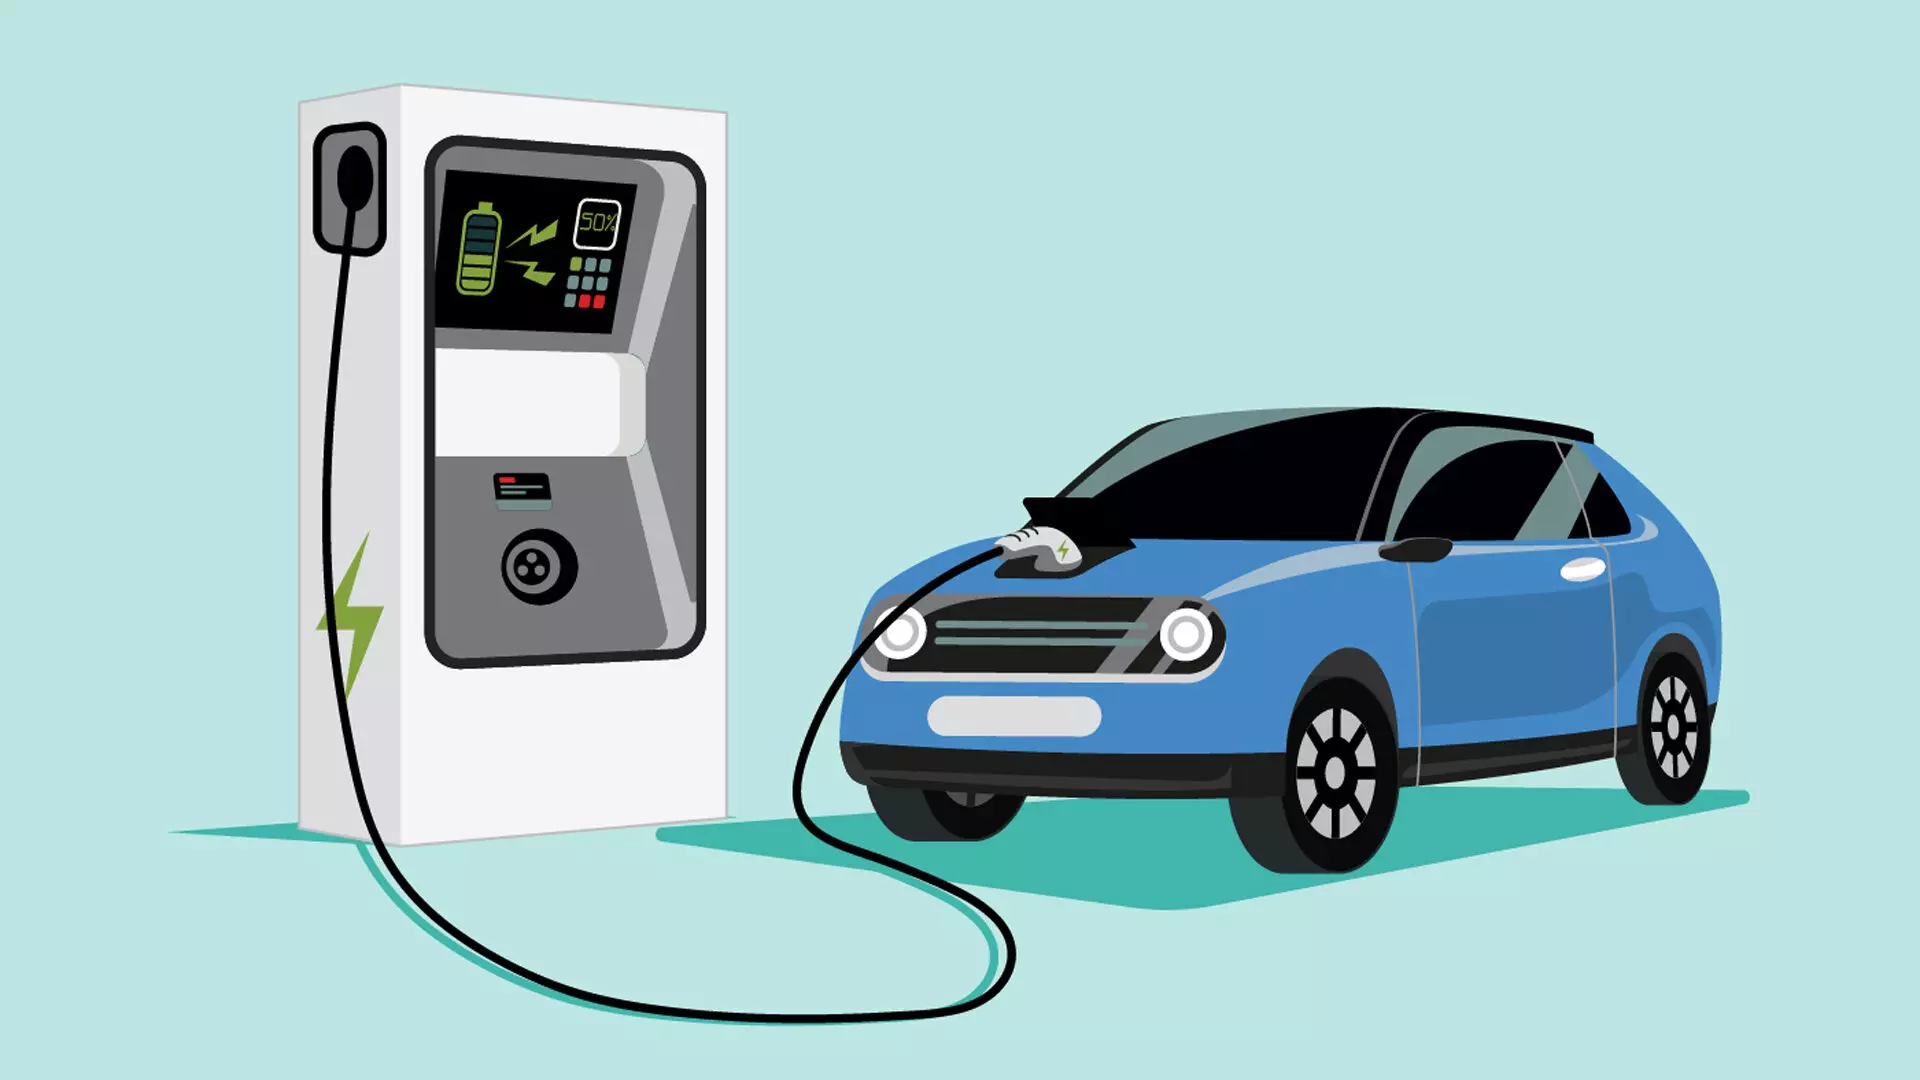 इलेक्ट्रिक वाहन पेट्रोल, डीजल कारों से अधिक प्रदूषण फैलाते हैं? अध्ययन से हुआ खुलासा